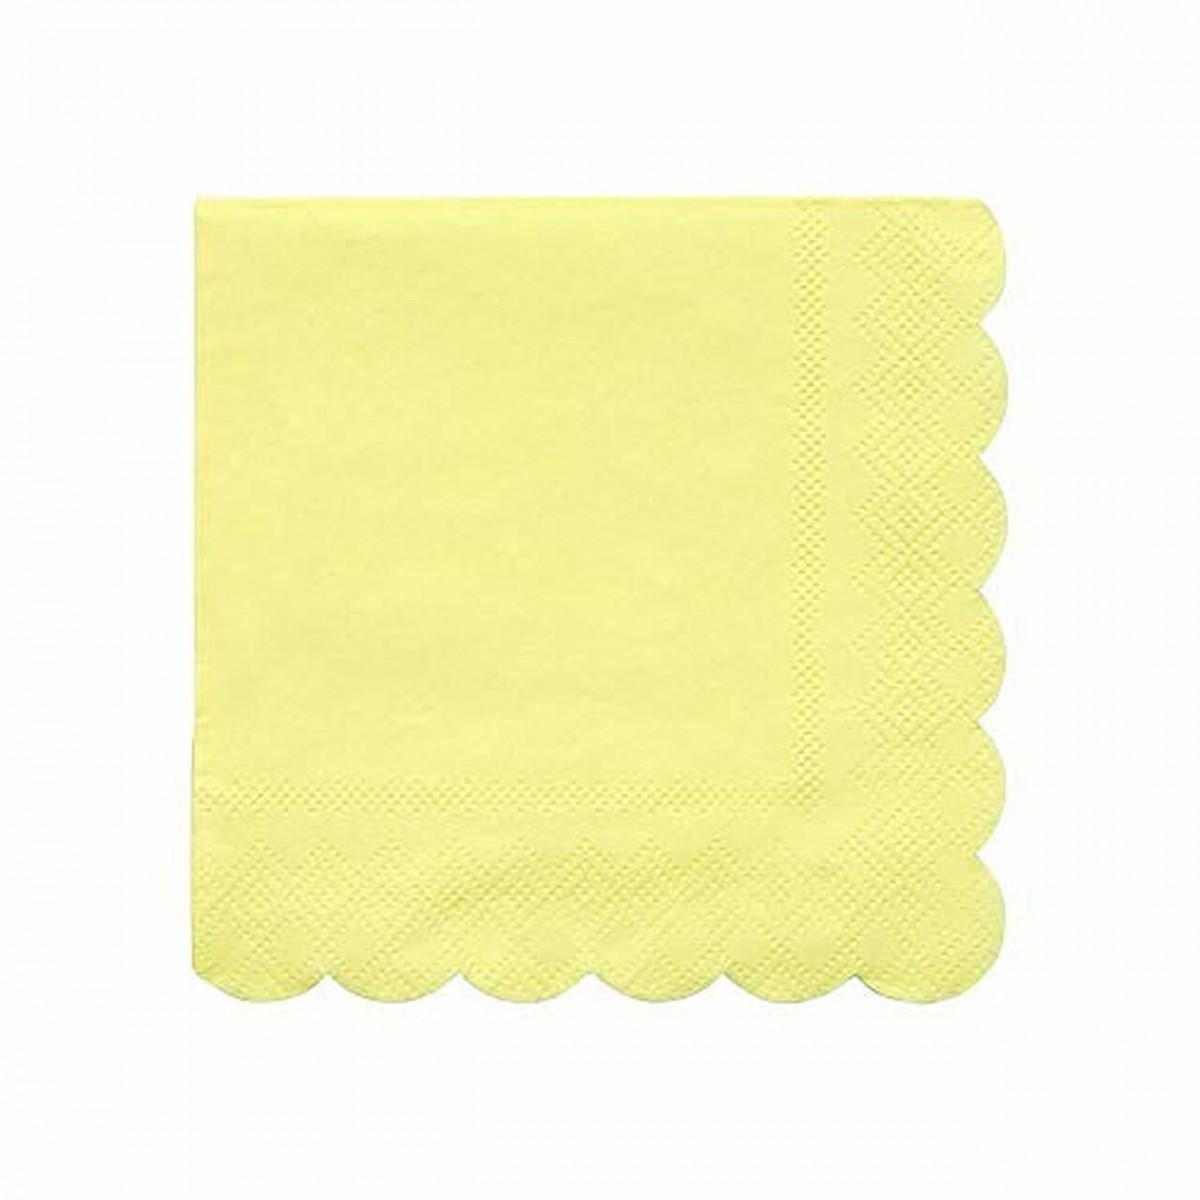 20 Petites serviettes jaune pastel